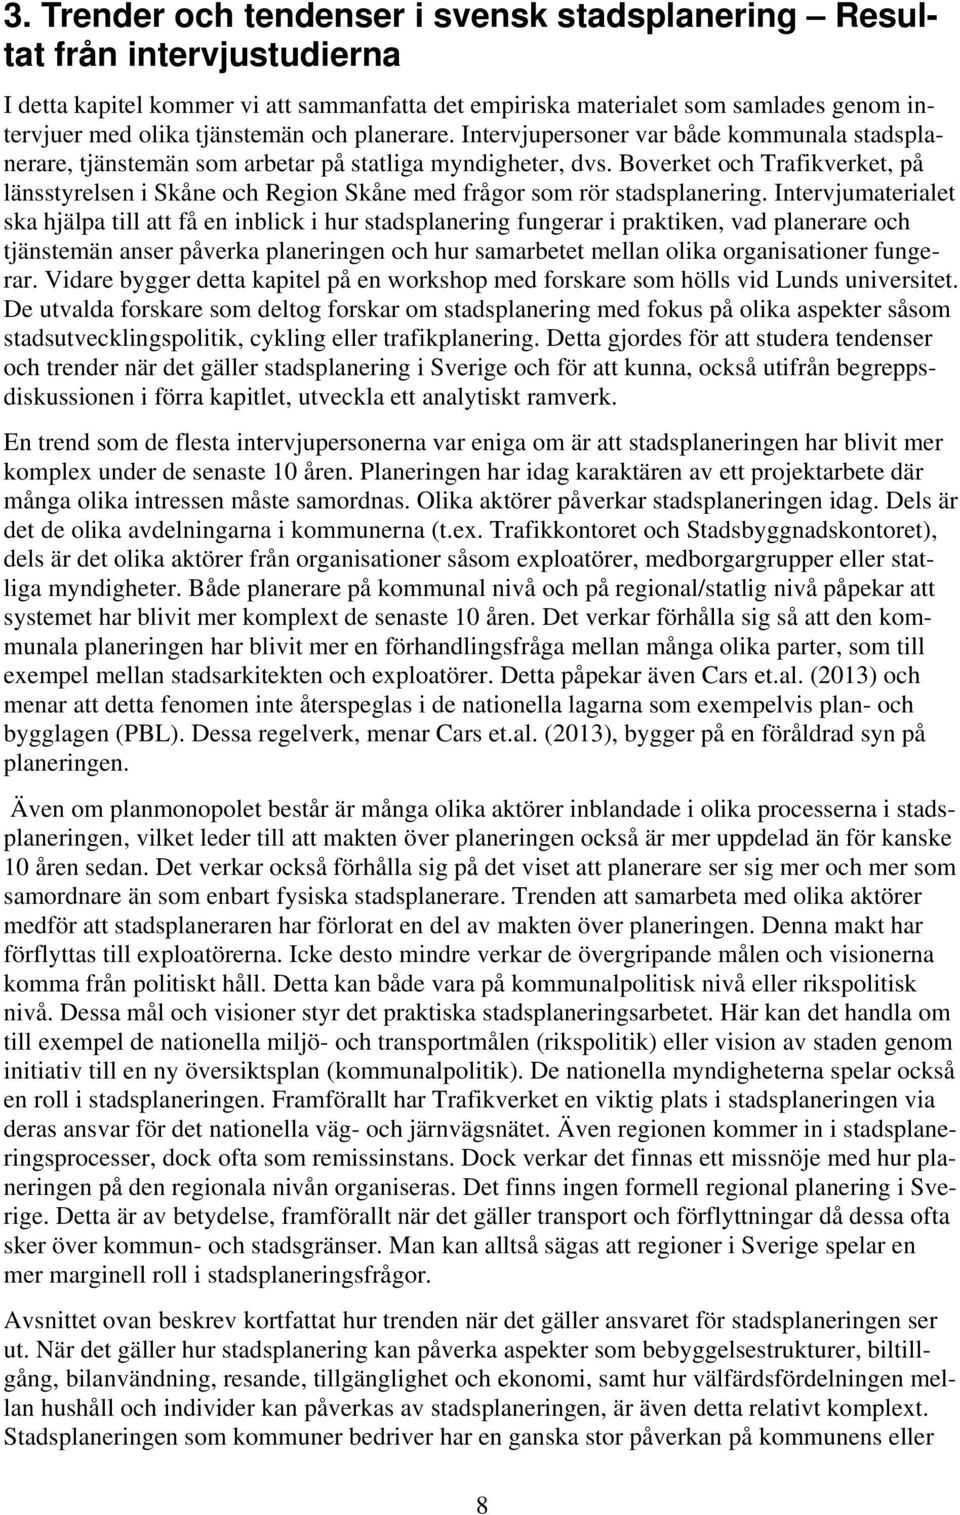 Boverket och Trafikverket, på länsstyrelsen i Skåne och Region Skåne med frågor som rör stadsplanering.